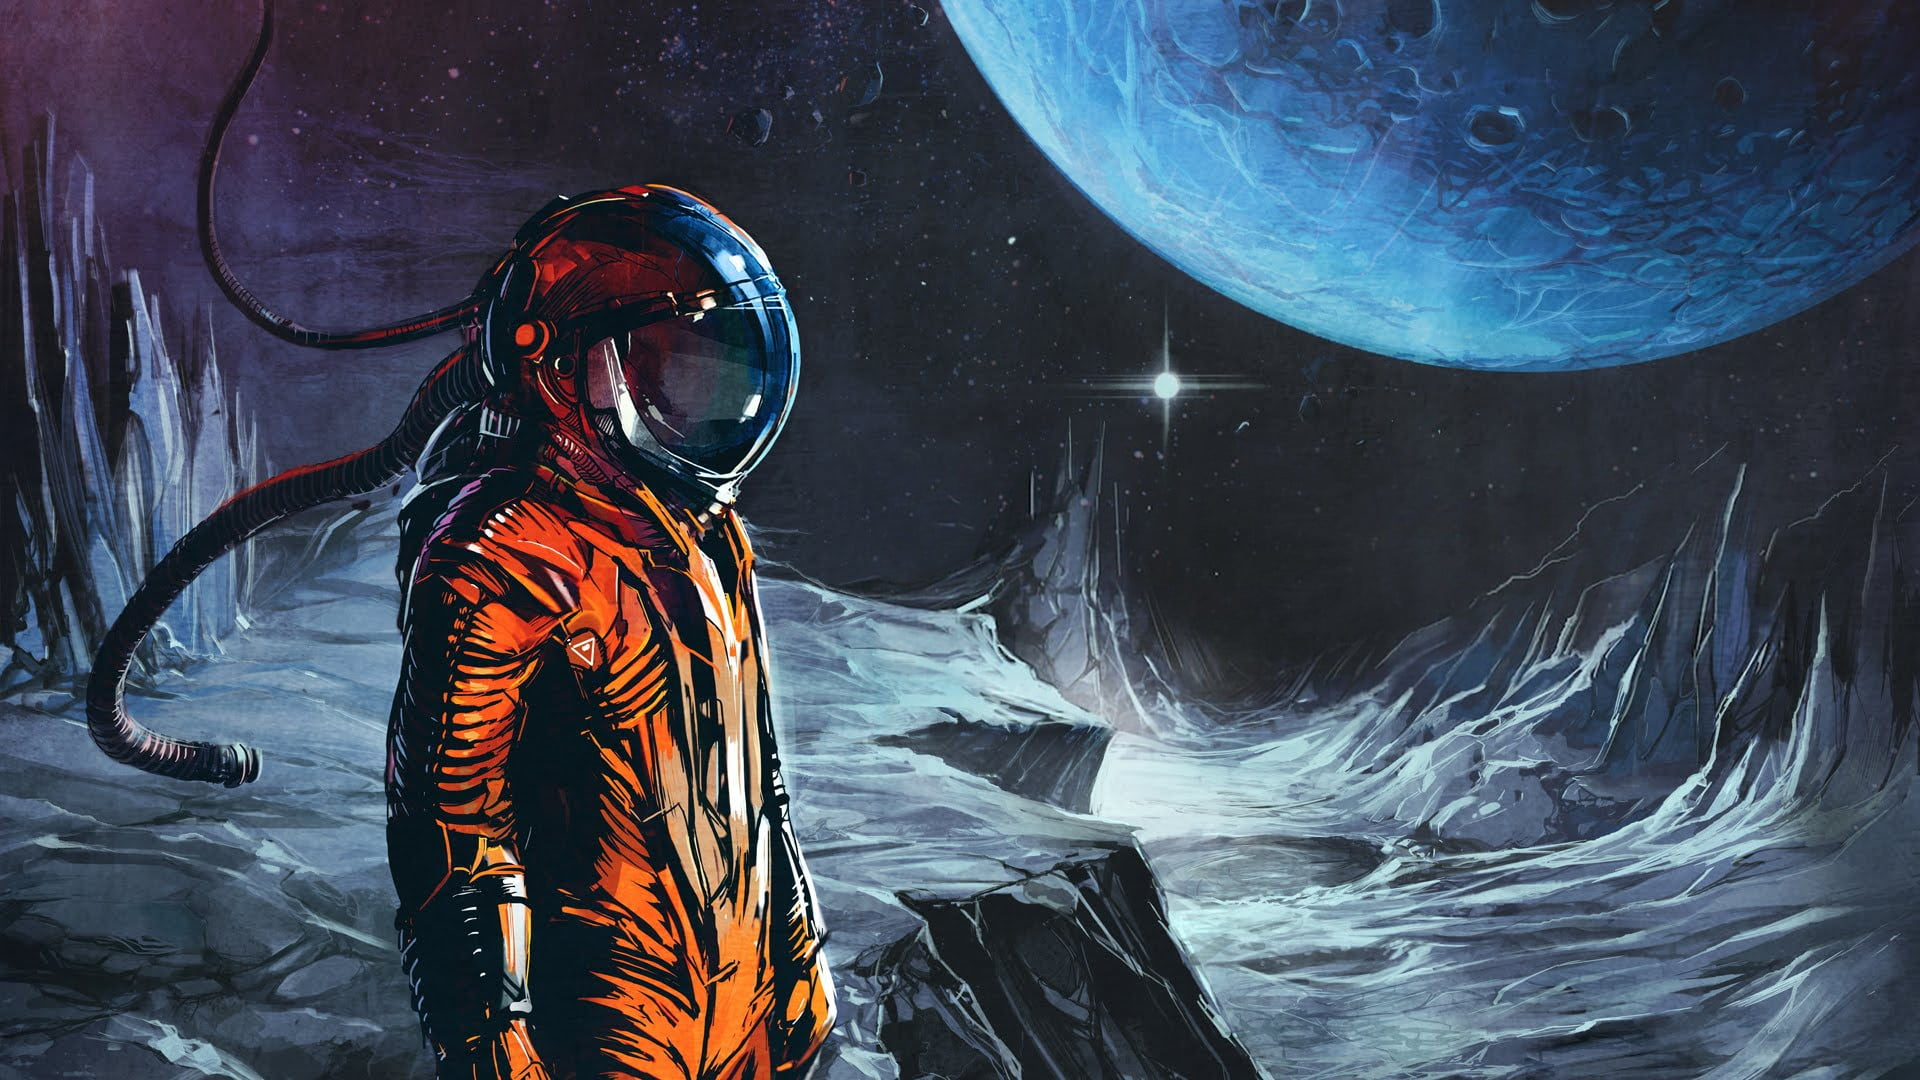 Wallpaper Man In Orange Astronaut Suit With Moon Wallpaper, Man With Helmet  On Moon Painting - Wallpaperforu